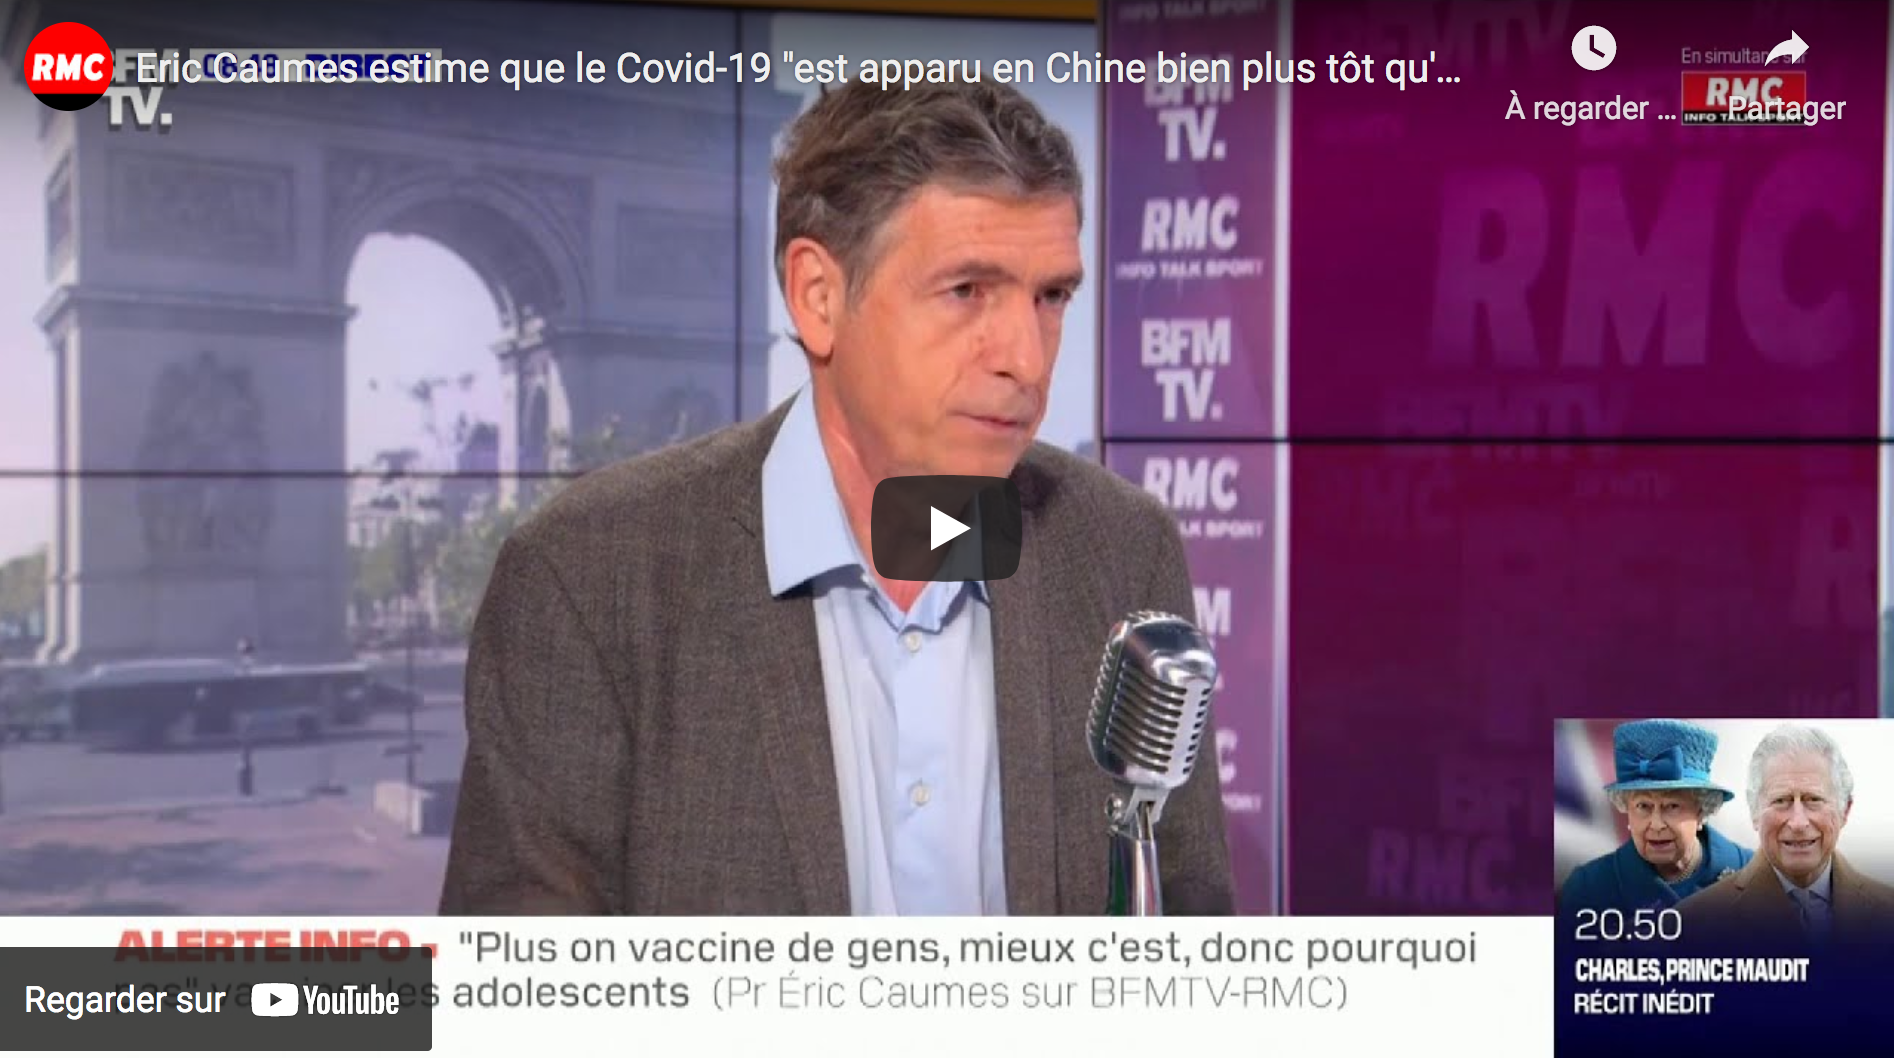 Le Pr Éric Caumes estime que le Covid-19 “est apparu en Chine bien plus tôt qu’on ne le pense” (VIDÉO)